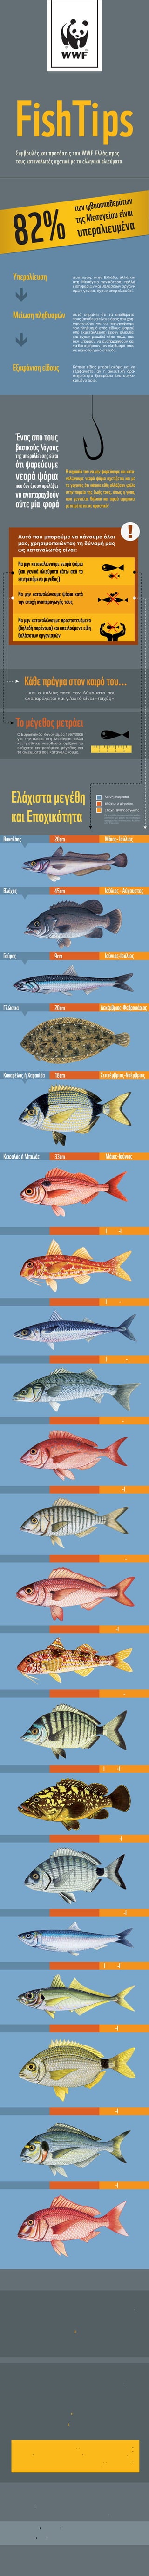 FishTips
Συµβουλές και προτάσεις του WWF Ελλάς προς
τους καταναλωτές σχετικά µε τα ελληνικά αλιεύµατα

2%
8
Υπεραλίευση

θεµάτων
ων ιχθυοαπο

τ

γείου είναι
της Μεσο

λιευµένα
υπερα

Δυστυχώς, στην Ελλάδα, αλλά και
στη Μεσόγειο γενικότερα, πολλά
είδη ψαριών και θαλάσσιων οργανισμών γενικά, έχουν υπεραλιευθεί.

ê
Μείωση πληθυσµών

ê
Εξαφάνιση είδους

Αυτό σημαίνει ότι τα αποθέματα
τους (απόθεμα είναι ο όρος που χρησιμοποιούμε για να περιγράψουμε
τον πληθυσμό ενός είδους ψαριού
υπό εκμετάλλευση) έχουν αλιευθεί
και έχουν μειωθεί τόσο πολύ, που
δεν μπορούν να αναπαραχθούν και
να διατηρήσουν τον πληθυσμό τους
σε ικανοποιητικό επίπεδο.

Κάποιο είδος μπορεί ακόμα και να
εξαφανιστεί αν η αλιευτική δραστηριότητα ξεπεράσει ένα συγκεκριμένο όριο.

Ένας από τους

βασικούς λόγους
της υπεραλίευσης είναι

ότι ψαρεύουµε

νεαρά ψάρια

Η σηµασία του να µην ψαρεύουµε και καταναλώνουµε νεαρά ψάρια σχετίζεται και µε
το γεγονός ότι κάποια είδη αλλάζουν φύλο
στην πορεία της ζωής τους, όπως η γόπα,
που γεννιέται θηλυκό και αφού ωριµάσει
µετατρέπεται σε αρσενικό!

που δεν έχουν προλάβει

να αναπαραχθούν

ούτε µία φορά

!

Αυτό που μπορούμε να κάνουμε όλοι
μας, χρησιμοποιώντας τη δύναμή μας
ως καταναλωτές είναι:

Να µην καταναλώνουµε νεαρά ψάρια
(και γενικά αλιεύµατα κάτω από το
επιτρεπόµενο µέγεθος)
Να µην καταναλώνουµε ψάρια κατά
την εποχή αναπαραγωγής τους
Να µην καταναλώνουµε προστατευόµενα
(δηλαδή παράνοµα) και απειλούµενα είδη
θαλάσσιων οργανισµών

Κάθε πράγµα στον καιρό του...
...και ο κολιός ποτέ τον Αύγουστο που
αναπαράγεται και γι’αυτό είναι «παχύς»!

Το µέγεθος µετράει
Ο Ευρωπαϊκός Κανονισμός 1967/2006
για την αλιεία στη Μεσόγειο, αλλά
και η εθνική νομοθεσία, ορίζουν το
ελάχιστο επιτρεπόμενο μέγεθος για
τα αλιεύματα που καταναλώνουμε.

1

2

Ελάχιστα µεγέθη
και Εποχικότητα

3

4

Κοινή ονομασία
Ελάχιστο μέγεθος
Εποχή αναπαραγωγής
Οι περίοδοι αναπαραγωγής καθορίστηκαν με βάση τα διαθέσιμα
στοιχεία του Ινστιτούτου Αλιευτικής Έρευνας.

Βακαλάος

20cm

Μάιος- Ιούλιος

Βλάχος

45cm

Ιούλιος - Αύγουστος

Γαύρος

9cm

Ιούνιος-Ιούλιος

Γλώσσα

20cm

∆εκέµβριος-Φεβρουάριος

Κακαρέλος ή Χαρακίδα

18cm

Σεπτέµβριος-Νοέµβριος

Κεφαλάς ή Μπαλάς

33cm

Μάιος-Ιούνιος

Κουτσοµούρα

11cm

Ιούνιος-Ιούλιος

Κολιός

18cm

Ιούλιος-Αύγουστος

Λαβράκι

25cm

Ιανουάριος-Μάρτιος

Λυθρίνι

15cm

Απρίλιος-Μάιος

Μουρµούρα

20cm

Απρίλιος-Ιούνιος

Μουσµούλι

17cm

Μπαρµπούνι

11cm

Μάιος-Ιούνιος

Ούγαινα ή Μυτάκι

18cm

Οκτώβριος-Νοέµβριος

Ροφοειδή

45cm

Ιούνιος-Ιούλιος

Σαργός

23cm

Μάρτιος-Ιούνιος

Σαρδέλα

11cm

∆εκέµβριος-Ιανουάριος

Σαφρίδι

15cm

Ιούνιος-Ιούλιος

Σπάρος

12cm

Μάιος-Ιούνιος

Τσιπούρα

20cm

Μάιος-Ιούνιος

Φαγγρί

18cm

Μάιος-Ιούνιος

Προστατευόµενα είδη

Σεπτέµβριος-Νοέµβριος

Υπάρχουν κάποια είδη θαλάσσιων οργανισμών
των οποίων η αλιεία, εκφόρτωση, πώληση και
κατά συνέπεια κατανάλωση απαγορεύονται.
Στην Ελλάδα απαγορεύεται ρητά η αλιεία:

• πίνας
• χτενιού
• πετροσωλήνα
• λευκoύ καρχαρία
• καρχαρία προσκυνητή

Απειλούµενα είδη

Πέρα από τα είδη που προστατεύονται από τη
νομοθεσία, υπάρχουν διάφορα είδη ψαριών
των οποίων τα αποθέματα απειλούνται και τα
οποία δεν πρέπει να καταναλώνουμε.
Είδη των οποίων τα αποθέματα απειλούνται στη
Μεσόγειο και δεν πρέπει να καταναλώνουμε:

• ο ερυθρός τόνος
• ο ξιφίας
• ο γαλέος
• οι καρχαρίες

Τα διάφορα είδη γαλέου στη χώρα μας (π.χ. δροσίτης, αστρογαλέος και γκριζογαλέος) έχουν υπεραλιευθεί, με αποτέλεσμα πολλές φορές τα εστιατόρια να χρησιμοποιούν - και άρα εμείς να καταναλώνουμε - διάφορα άλλα είδη καρχαριών.
Γενικότερα, θα πρέπει να μην καταναλώνουμε καρχαρίες (π.χ. ο γαλάζιος καρχαρίας πωλείται στα super market με την ένδειξη «Γλαυκός»).

Ευχαριστούμε θερμά τον Δρα Αργύρη Καλλιανιώτη του
Ινστιτούτου Αλιευτικής Έρευνας για τα στοιχεία εποχής
αναπαραγωγής και την επιμέλεια του κειμένου, και τον
Δαυίδ Κουτσογιαννόπουλο για τις εικονογραφήσεις.

Εικονογραφήσεις: © Δαυίδ Κουτσογιαννόπουλος
Από το βιβλίο «Τα Ψάρια της Ελλάδας»
Σχεδιασμός Infographic: © Βασίλης Κοκκινίδης / WWF Ελλάς

 